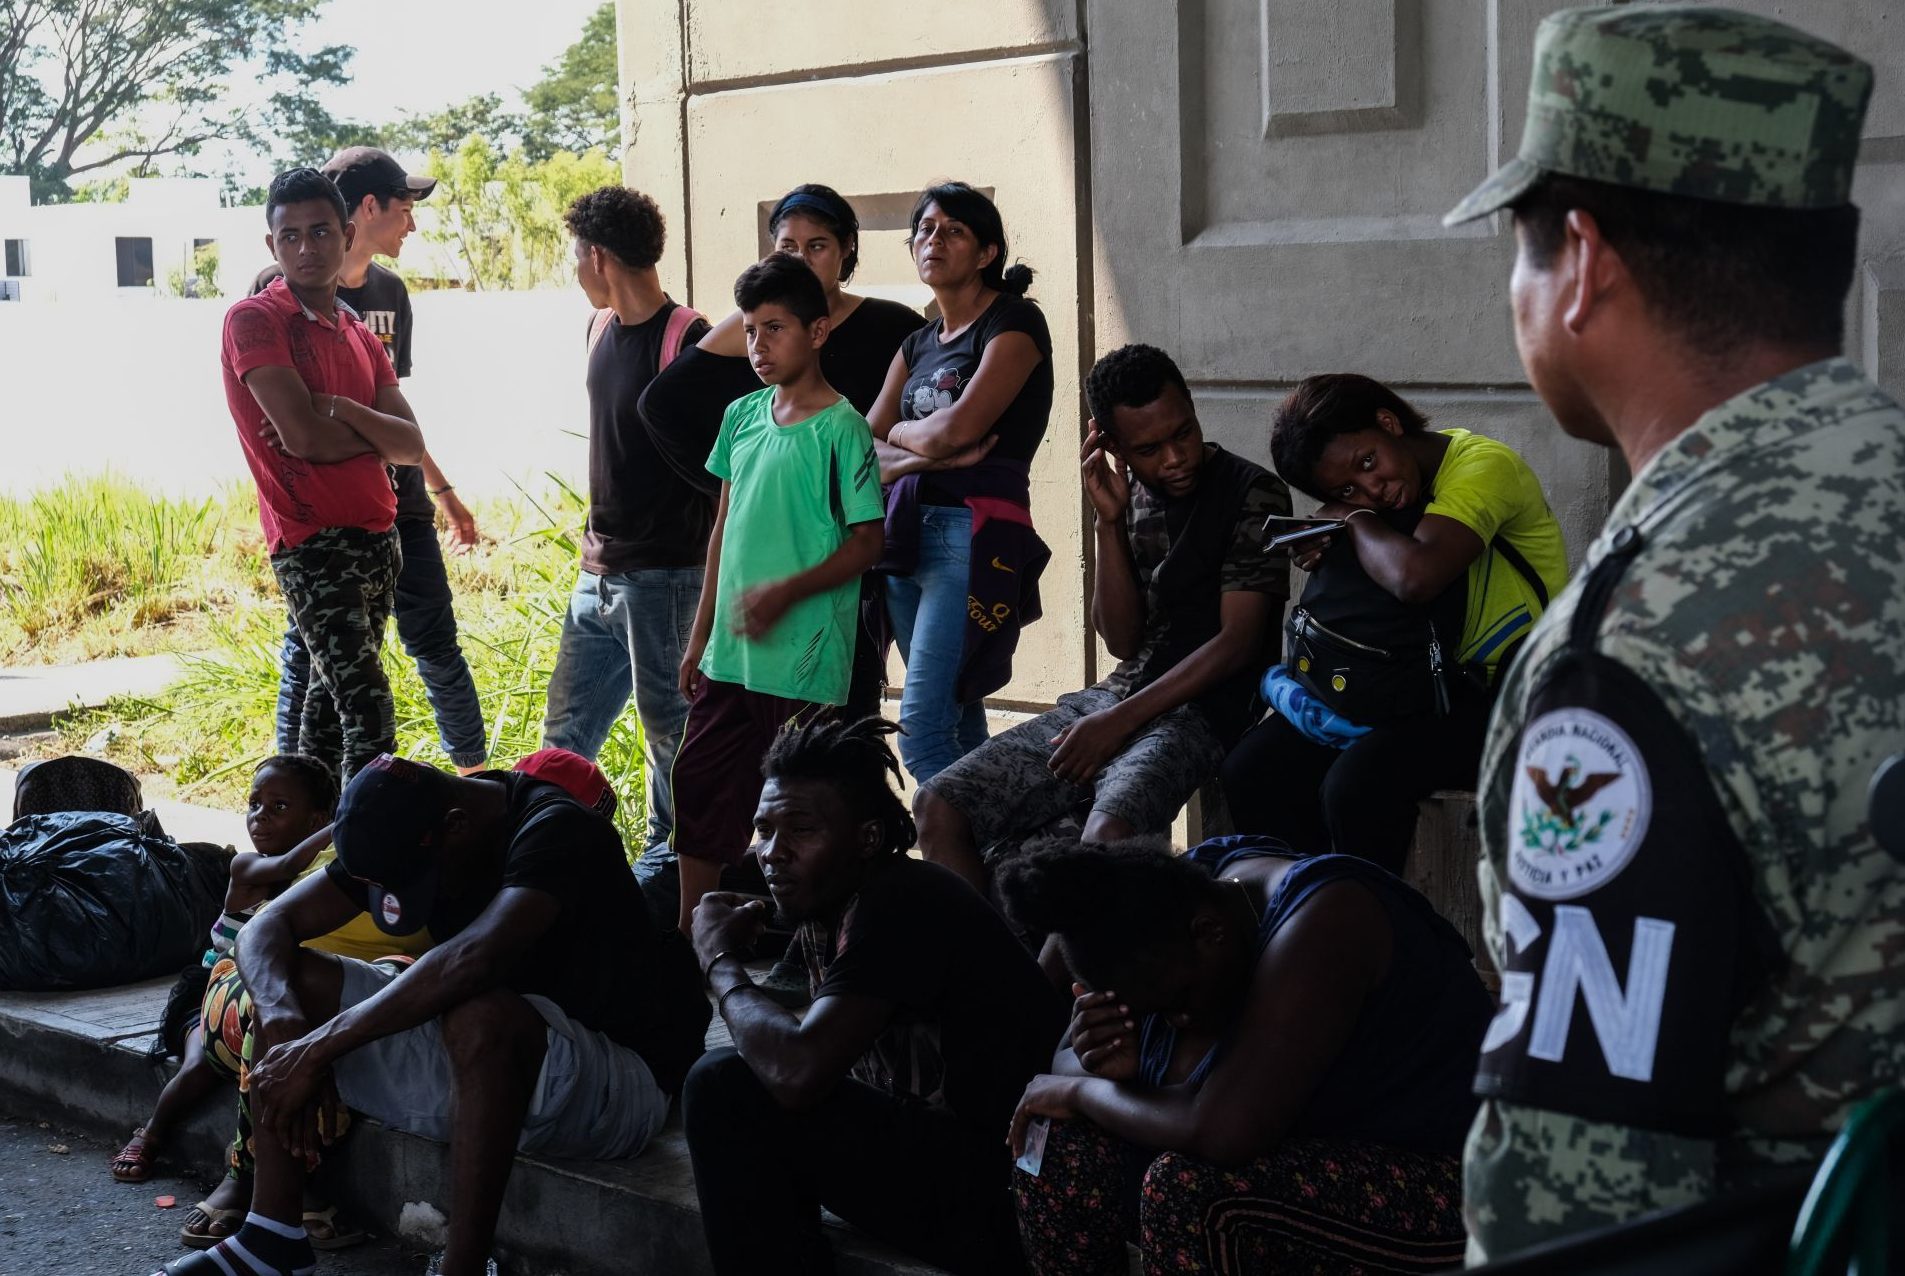 México detuvo arbitrariamente a dos migrantes y debe pagarles una indemnización: ONU